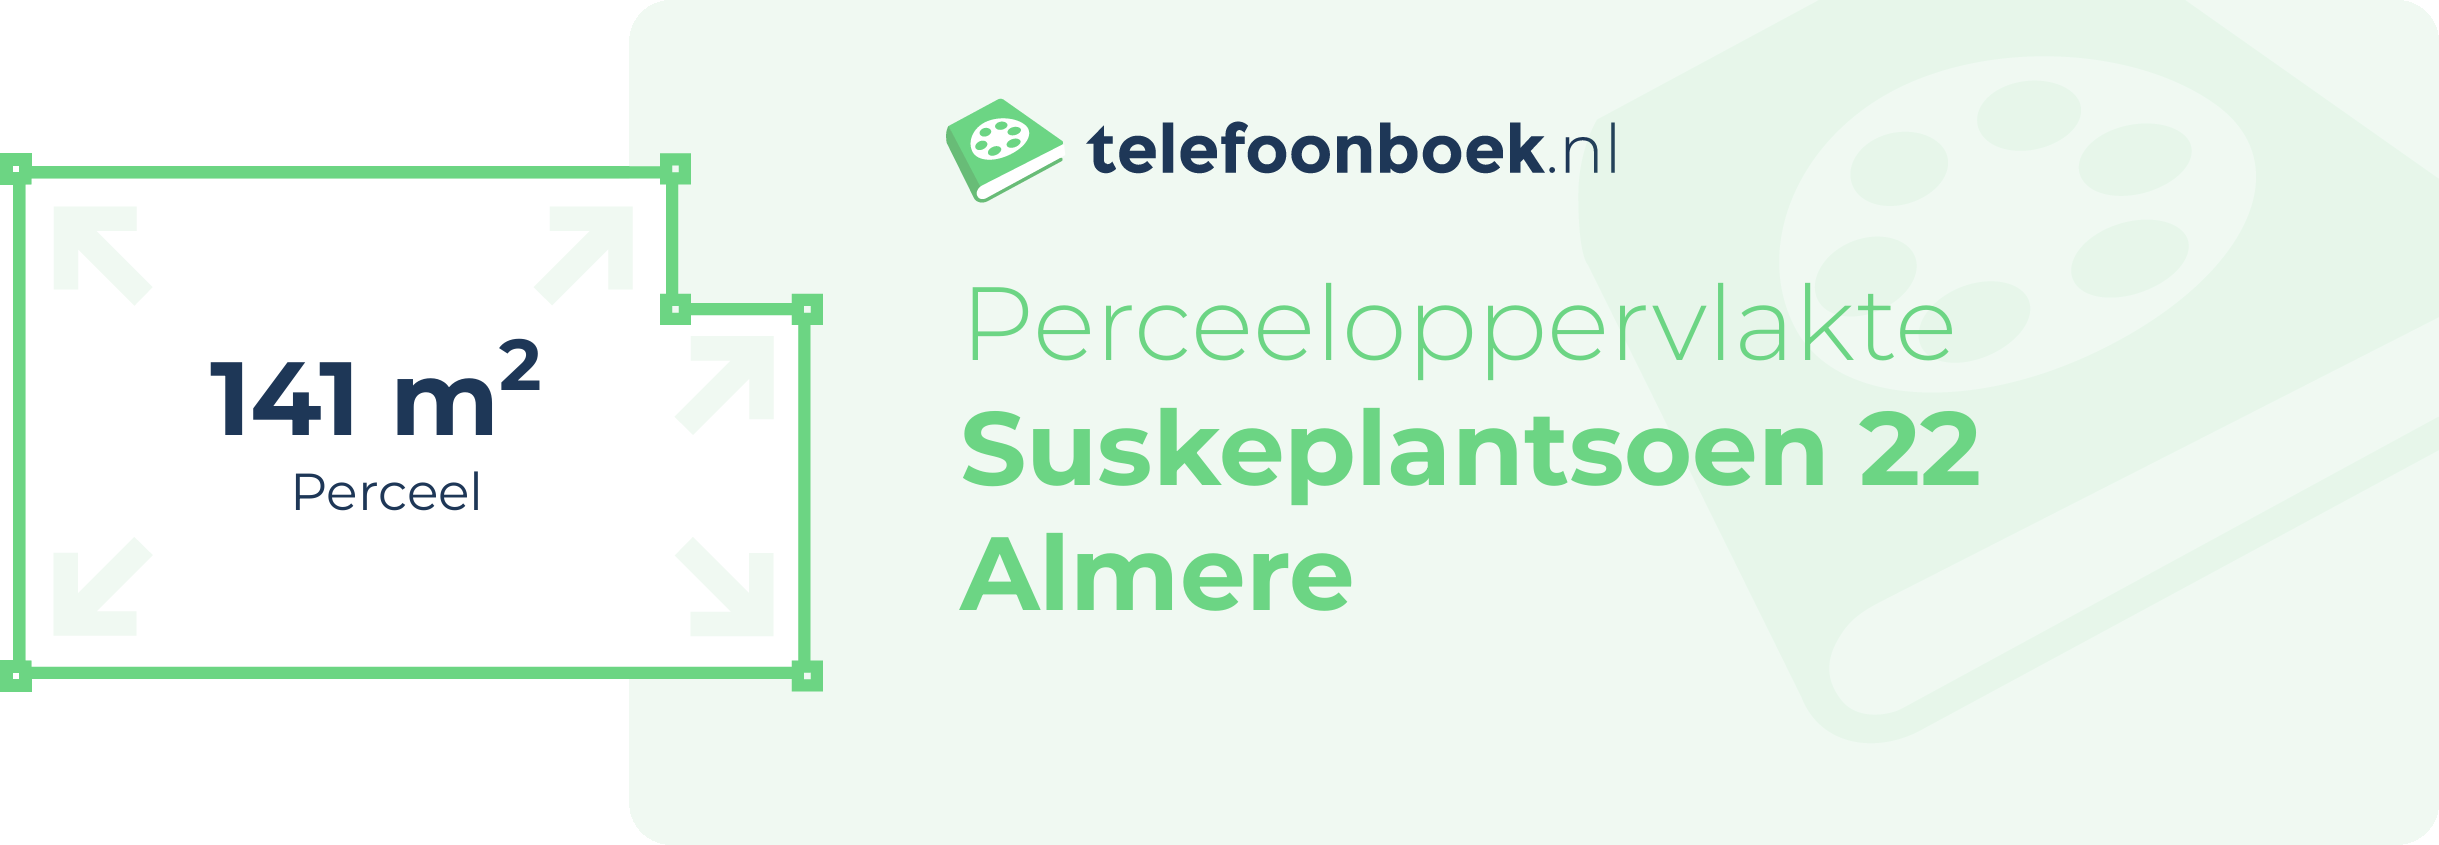 Perceeloppervlakte Suskeplantsoen 22 Almere